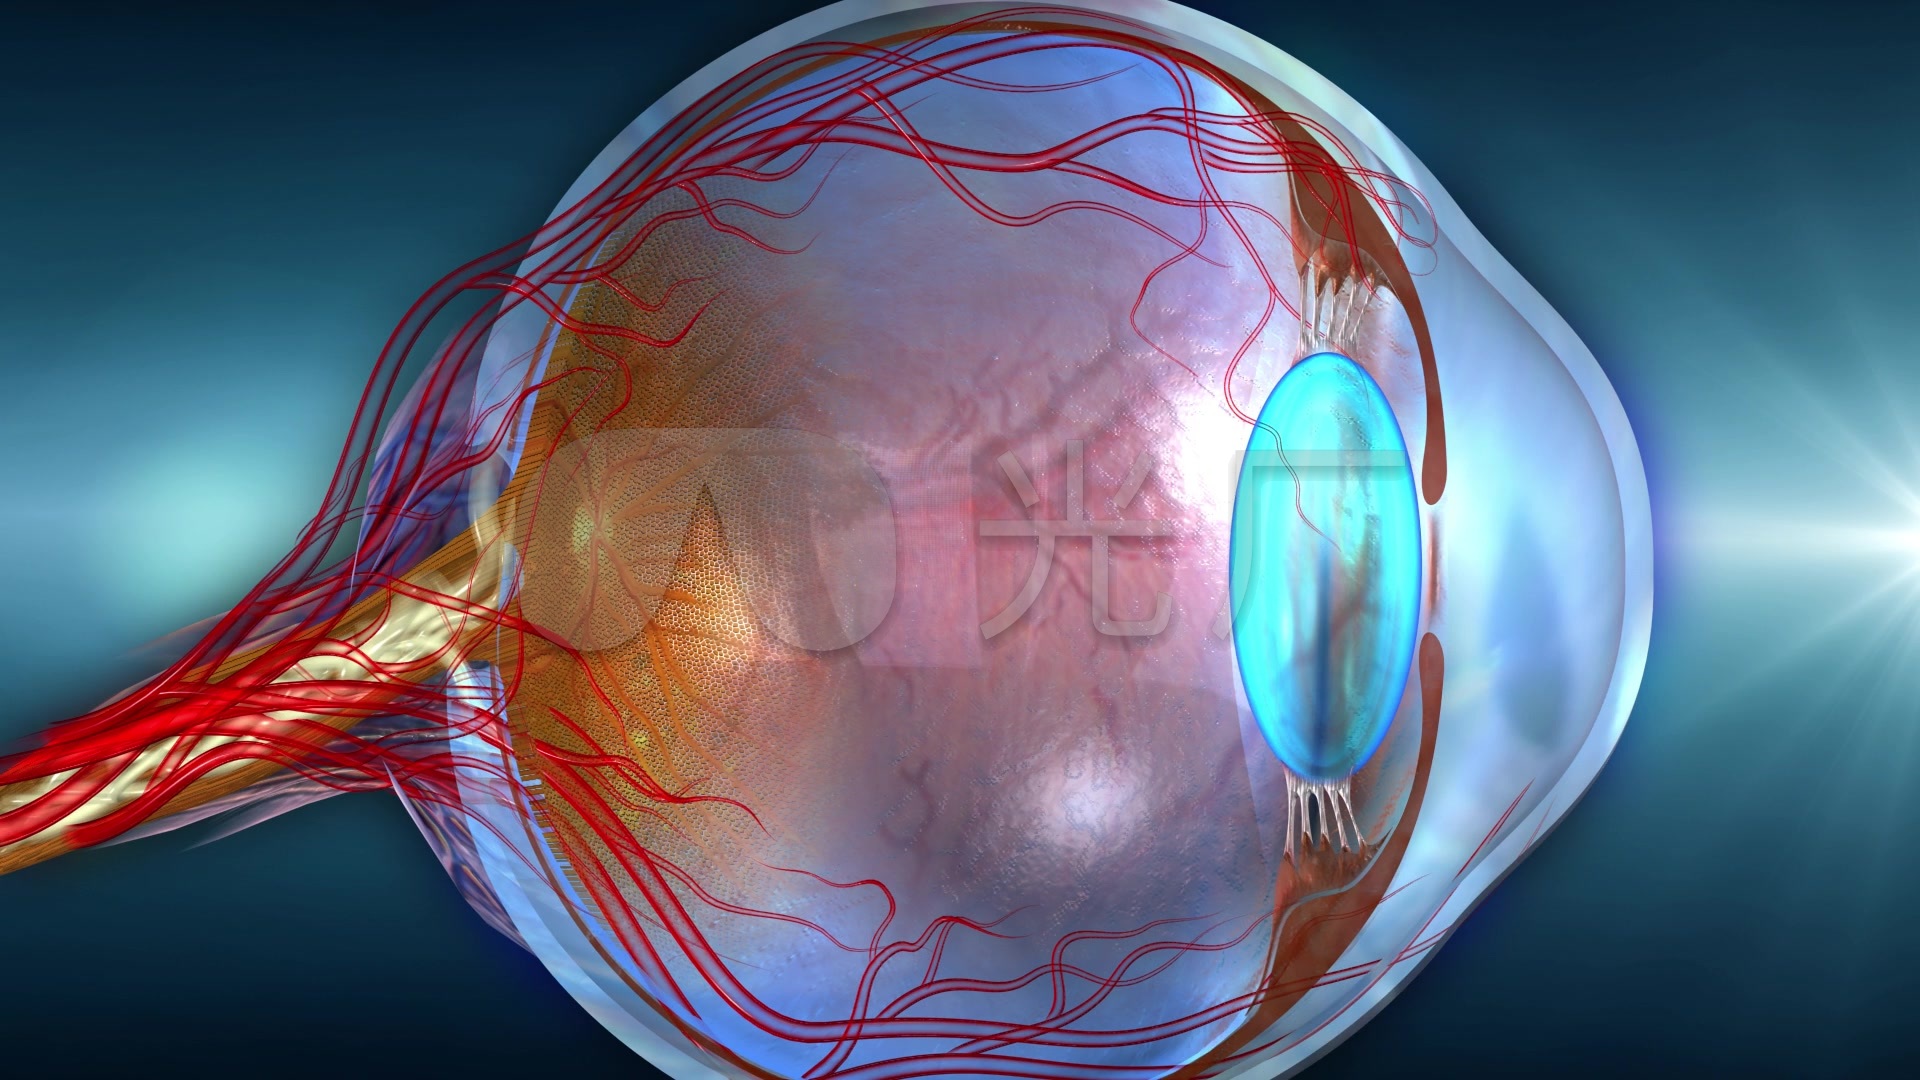 翻白眼用力过猛有可能把眼球翻 180 度看到自己的大脑吗？ - 知乎